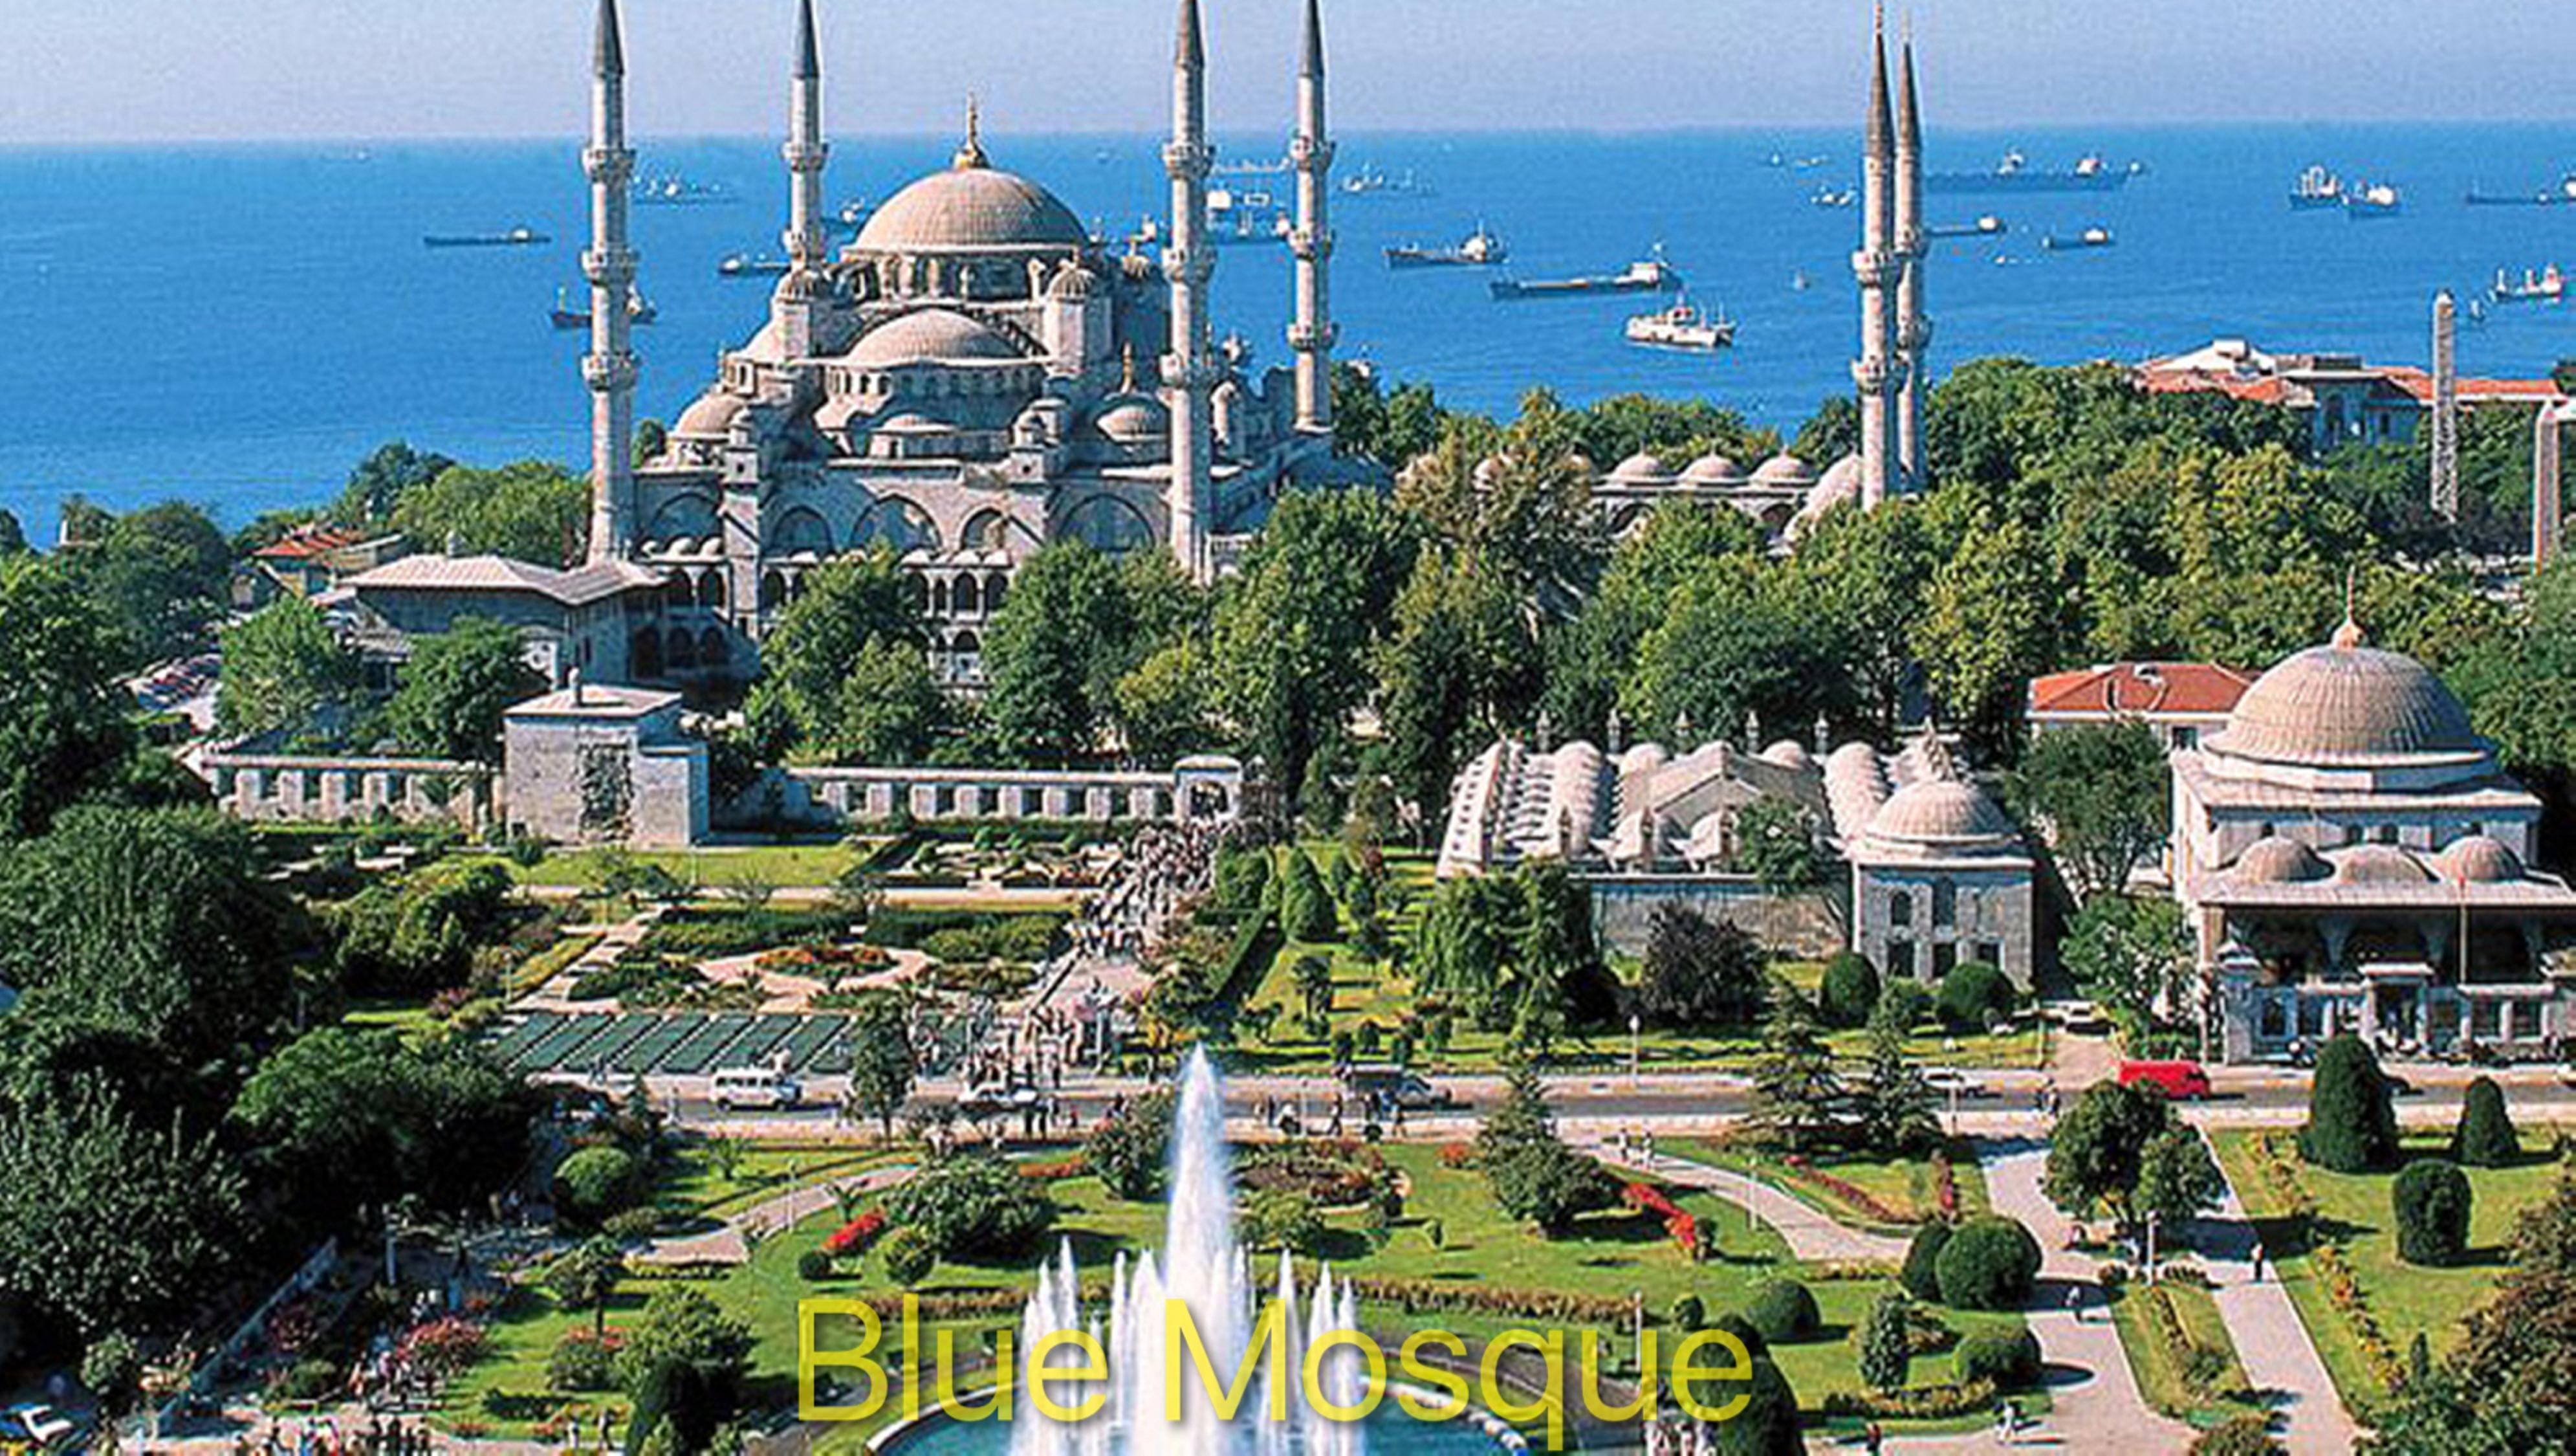 Gulhanepark Hotel & Spa Istanbul Bagian luar foto